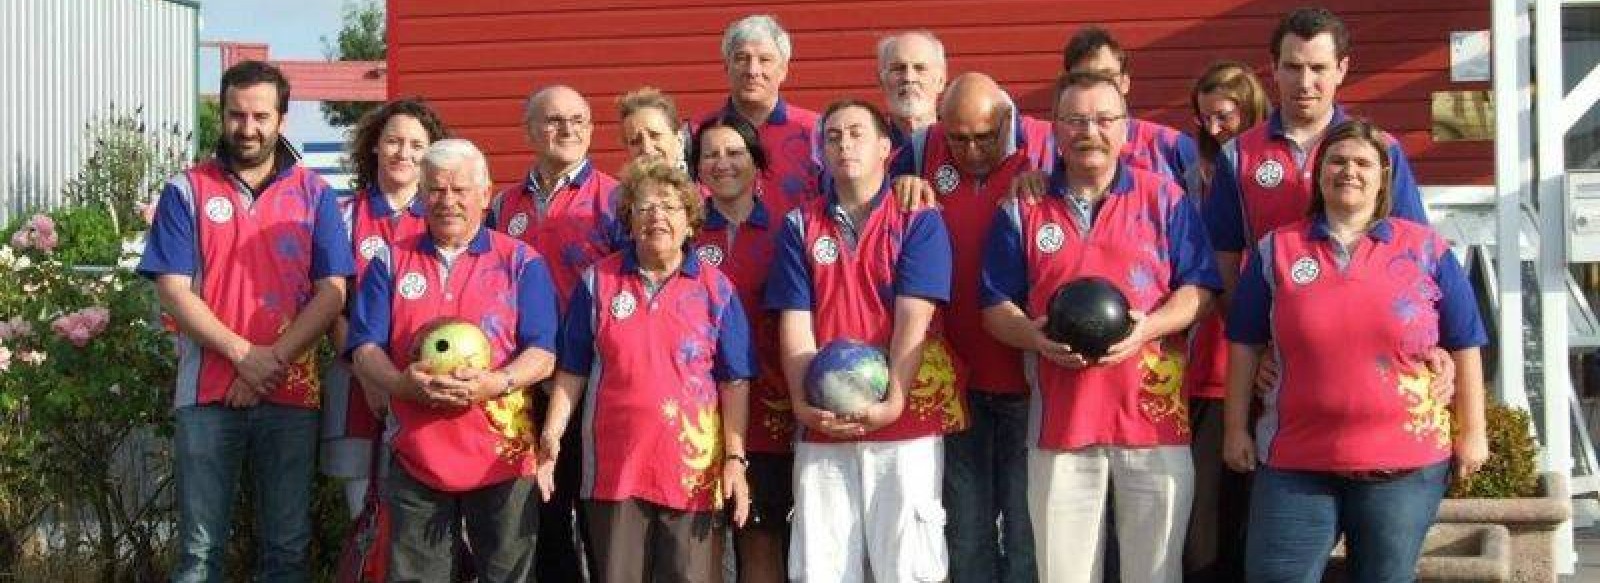 Association Sportive Gwenrann Presqu'ile Bowling Club